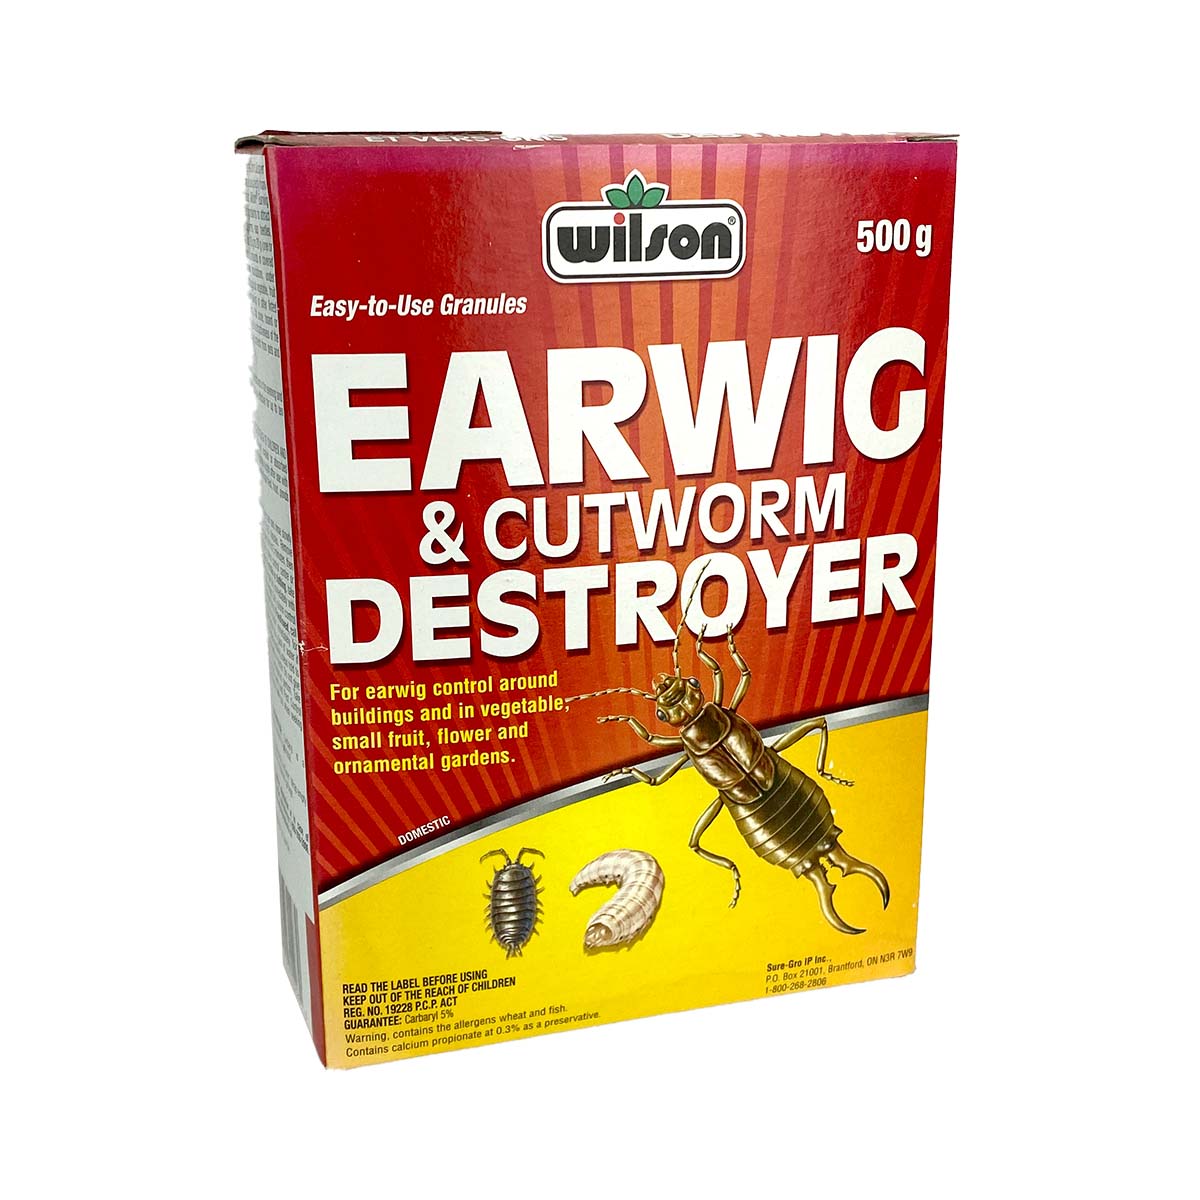 Wilson Earwig & Cutworm Destroyer 500g